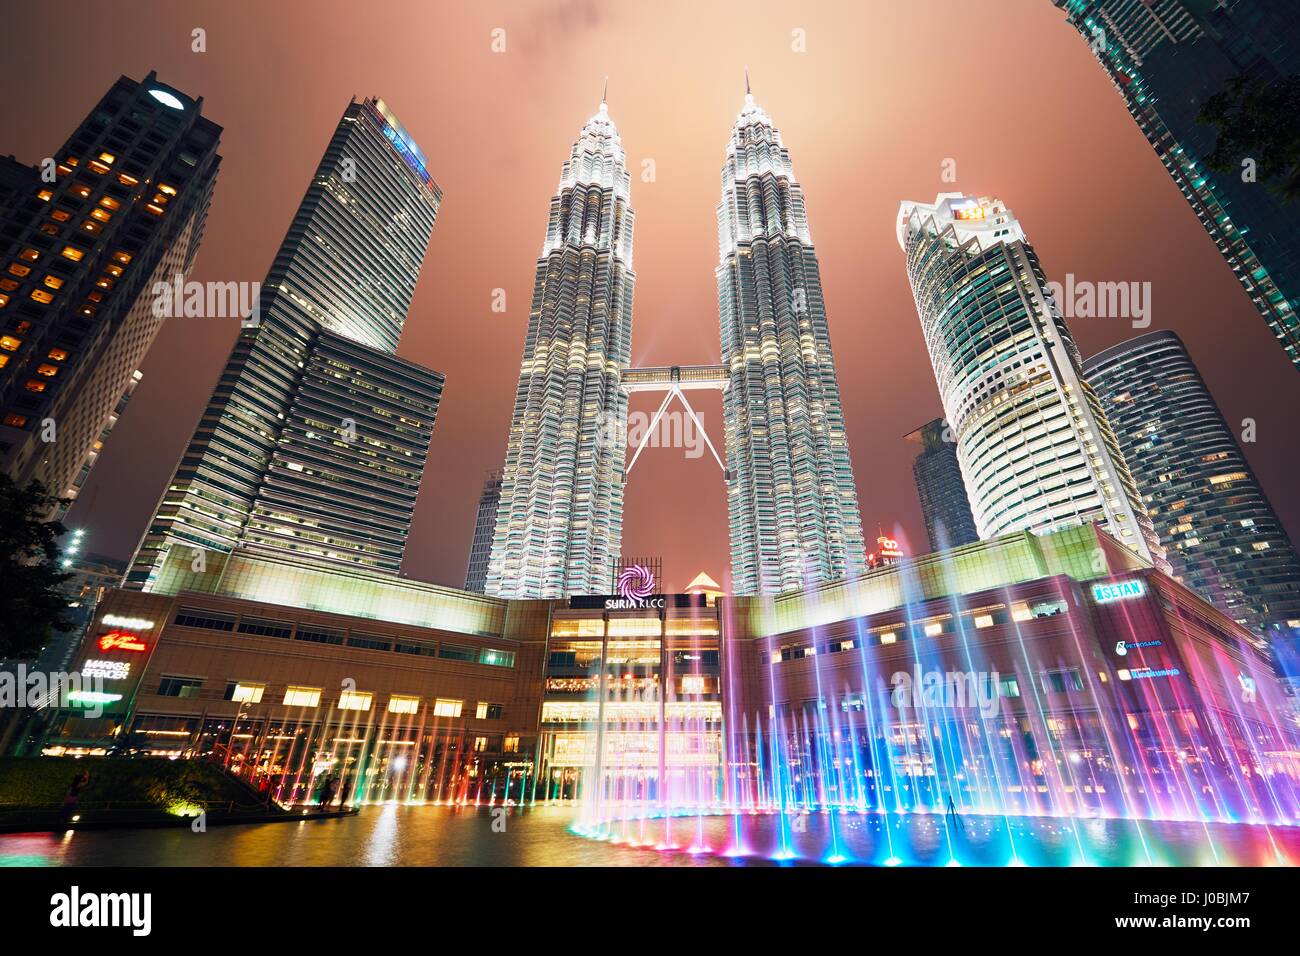 Kuala Lumpur, Malesia - 10 Marzo 2017: Petronas Twin Towers di notte il 10 marzo 2017 a Kuala Lumpur, Malesia. I grattacieli di altezza sono 451.9m Foto Stock